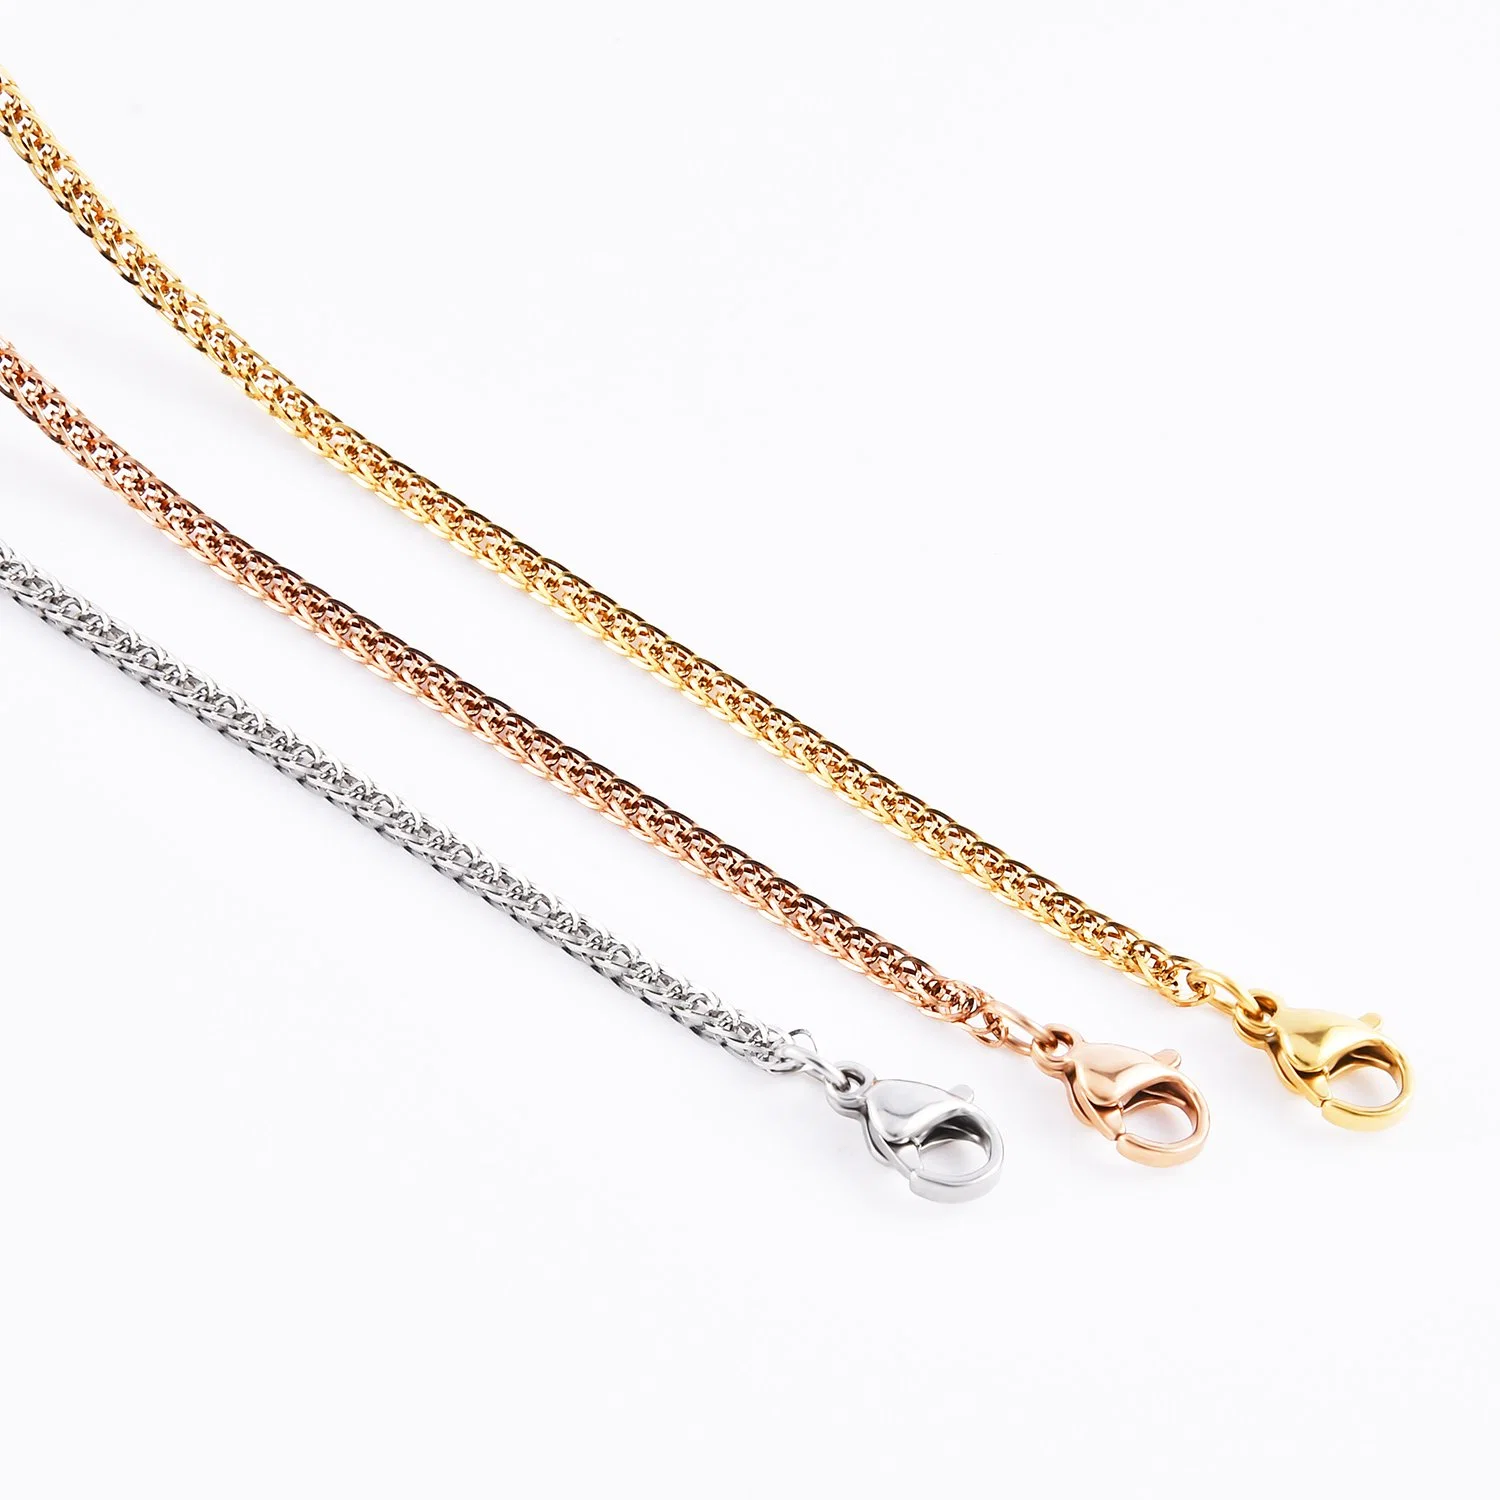 Comercio al por mayor Collar de trigo de la cadena de Joyas de acero inoxidable para la fabricación de joyas (bolsa de regalo de cristal de Sol Accesorios).